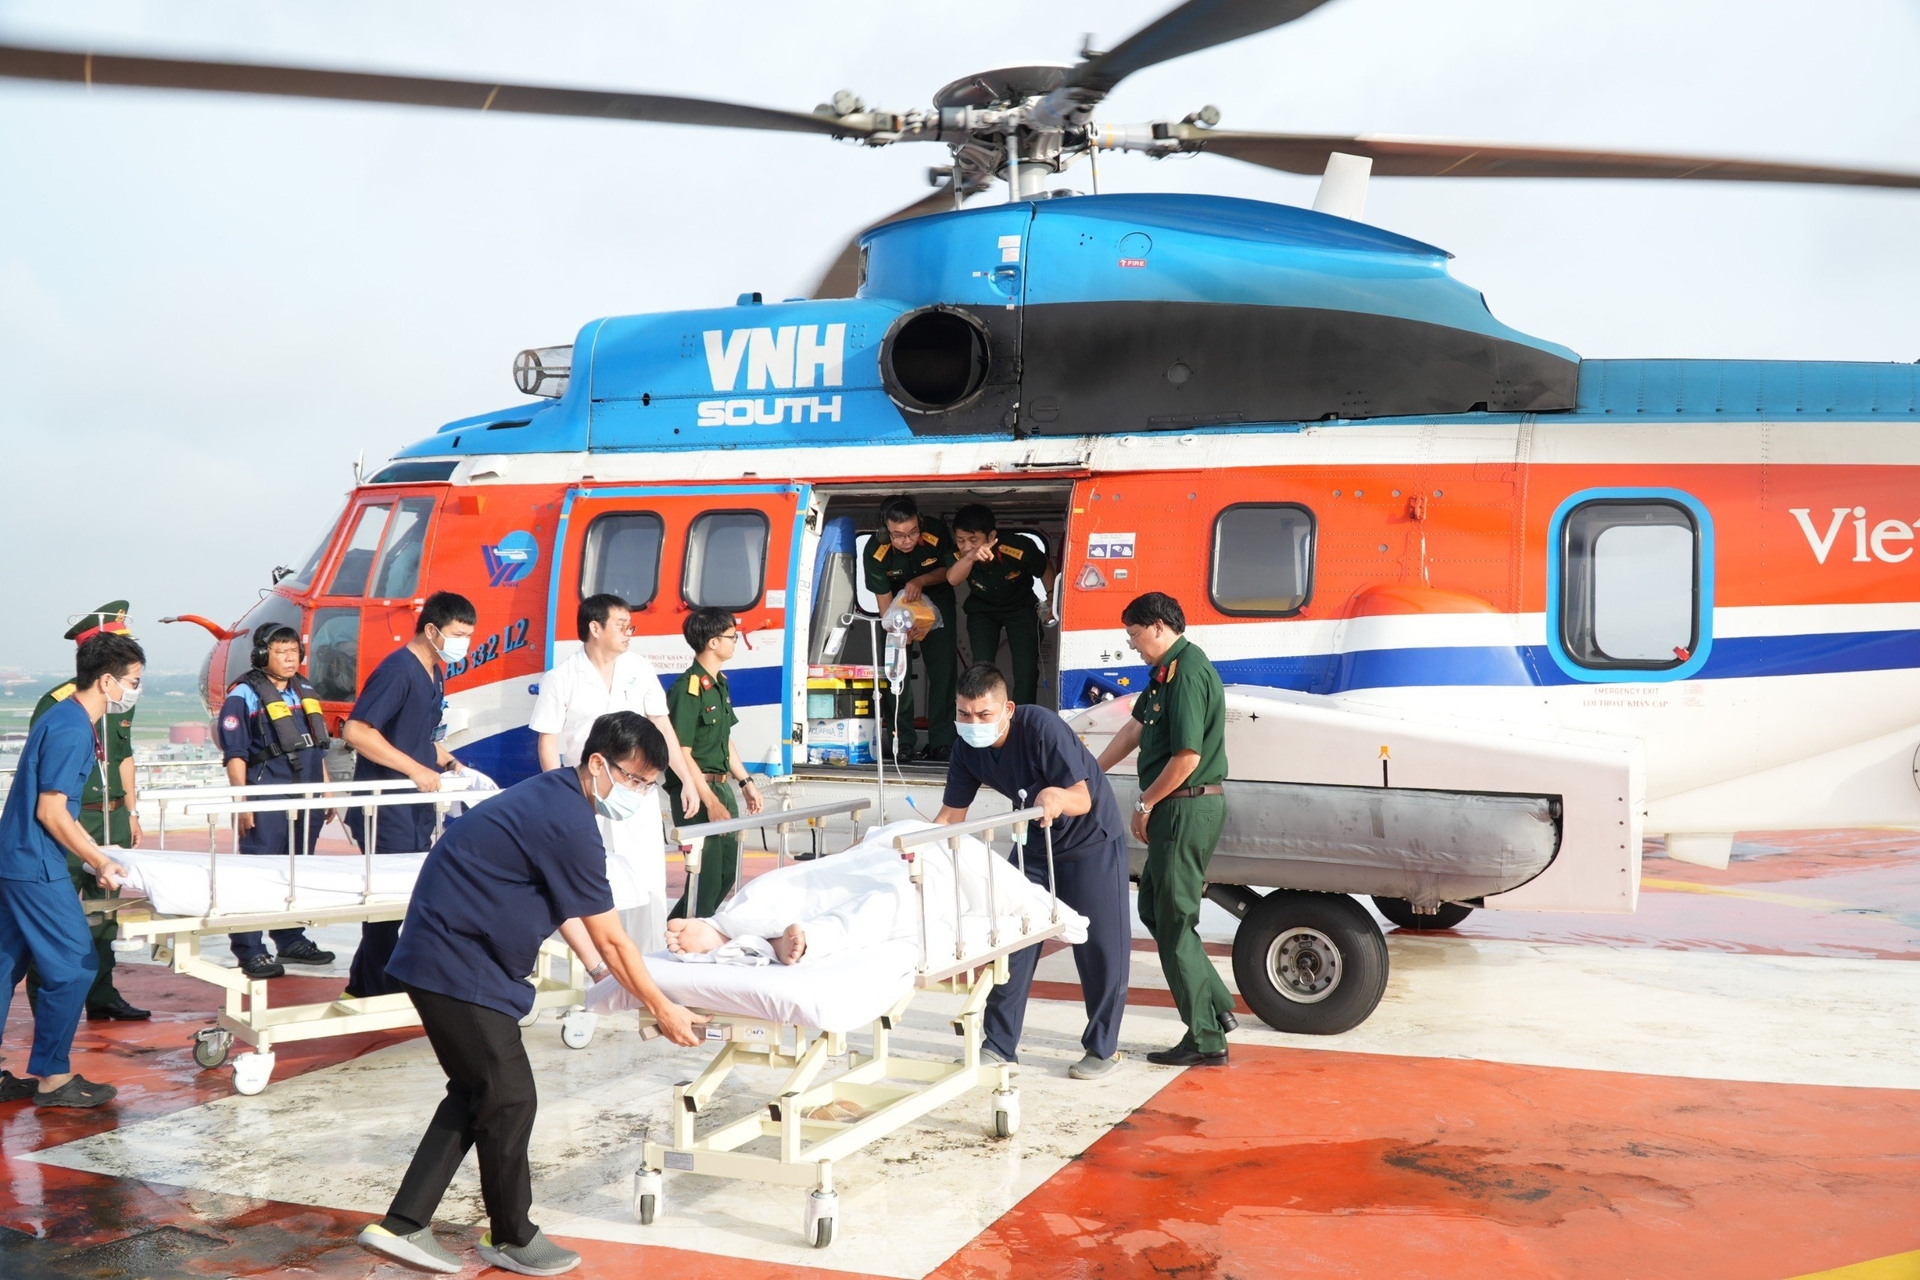 Lần đầu tiên trực thăng đưa 3 bệnh nhân từ Trường Sa về đất liền điều trị. Ảnh: BVCC.